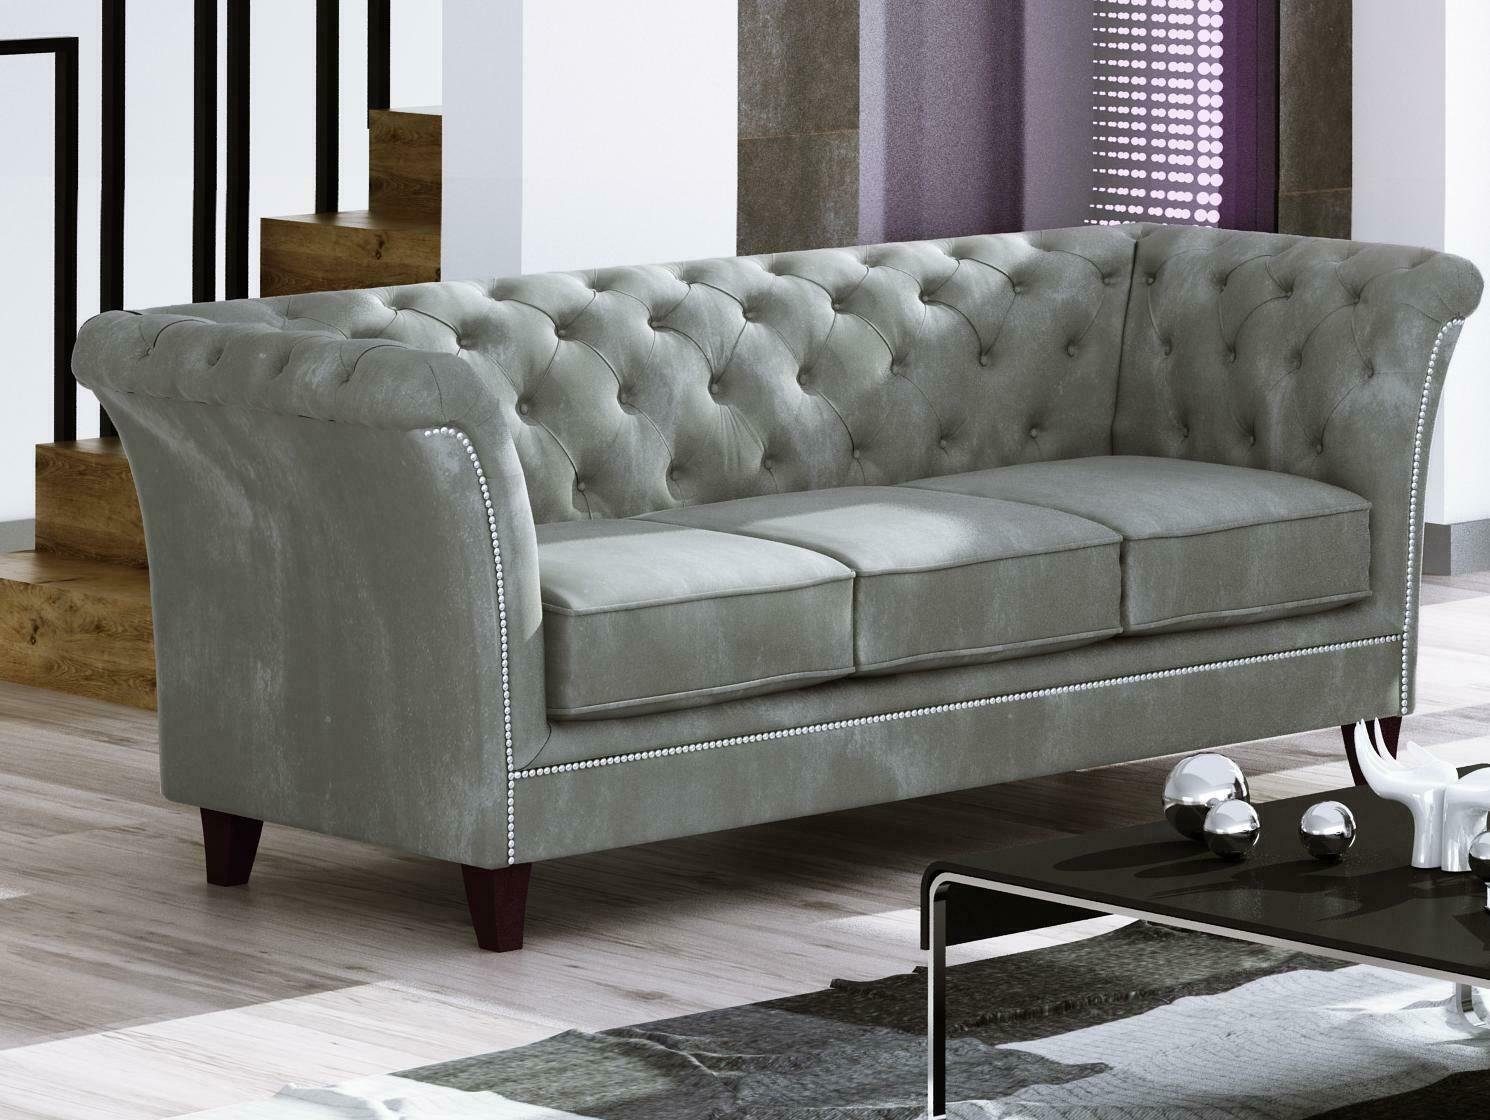 Couch in Made Europe Hellgrün Grüner Luxus Edel 3-Sitzer Möbel Chesterfield Sofa Neu, Dreisitzer JVmoebel